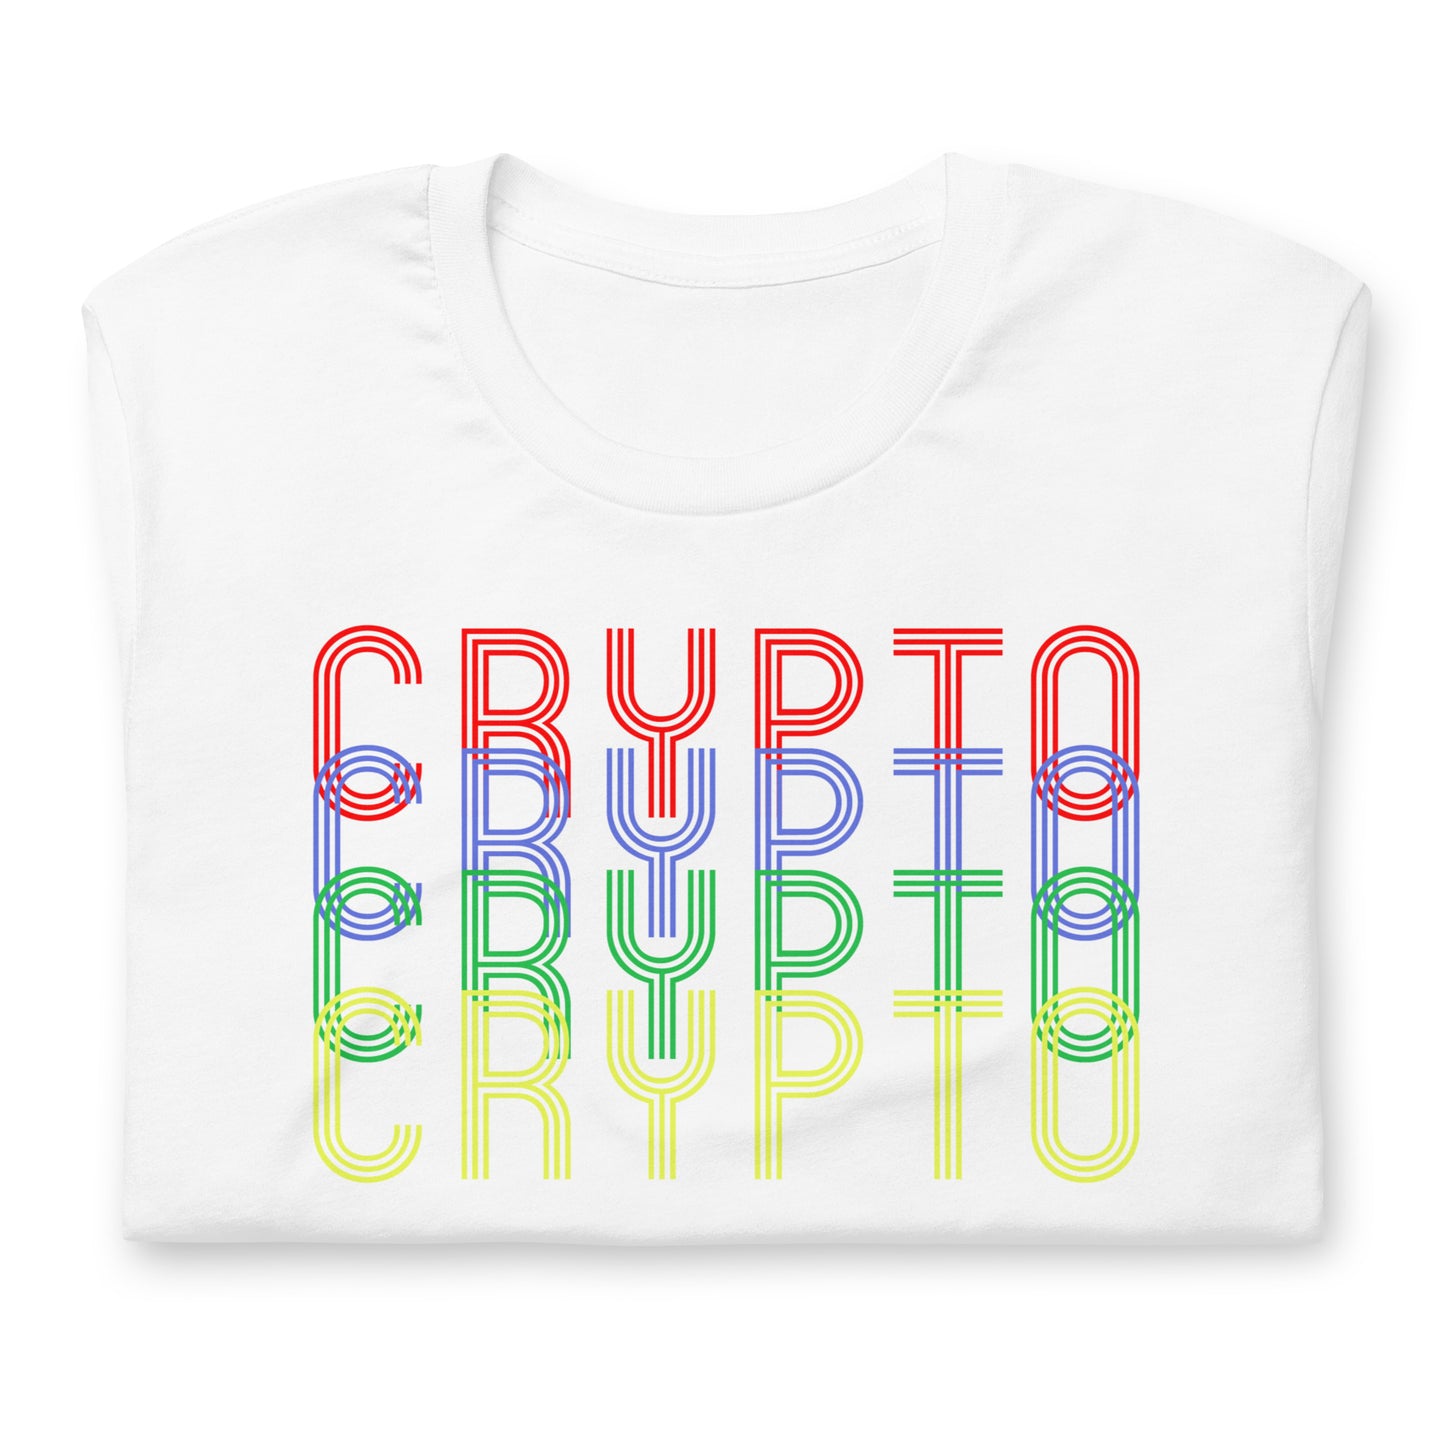 Crypto T-Shirt